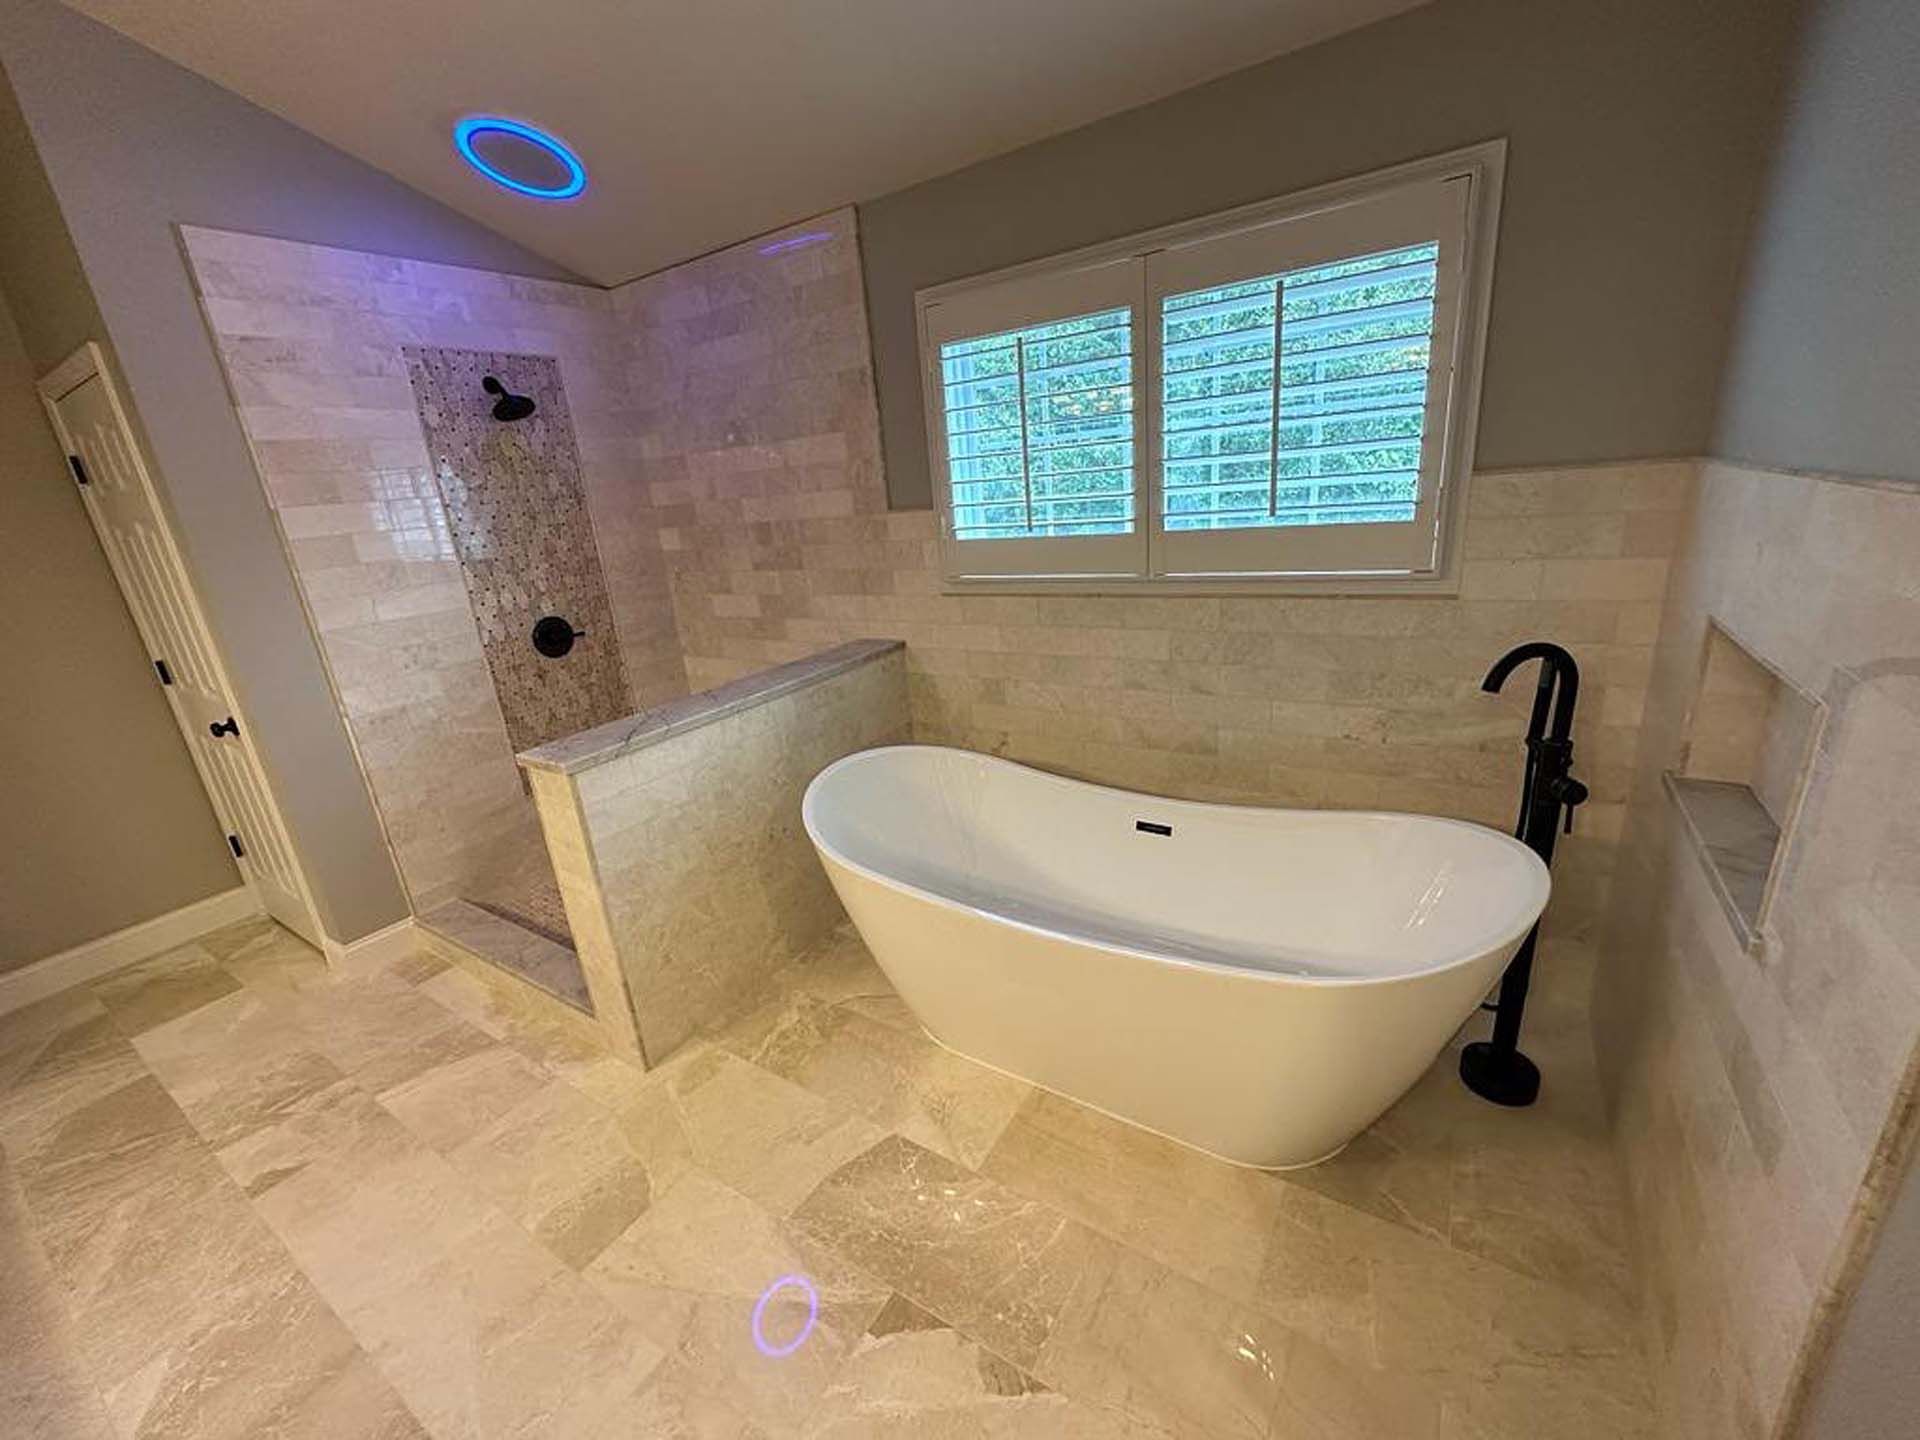 A bathroom with a bathtub , shower , and window.